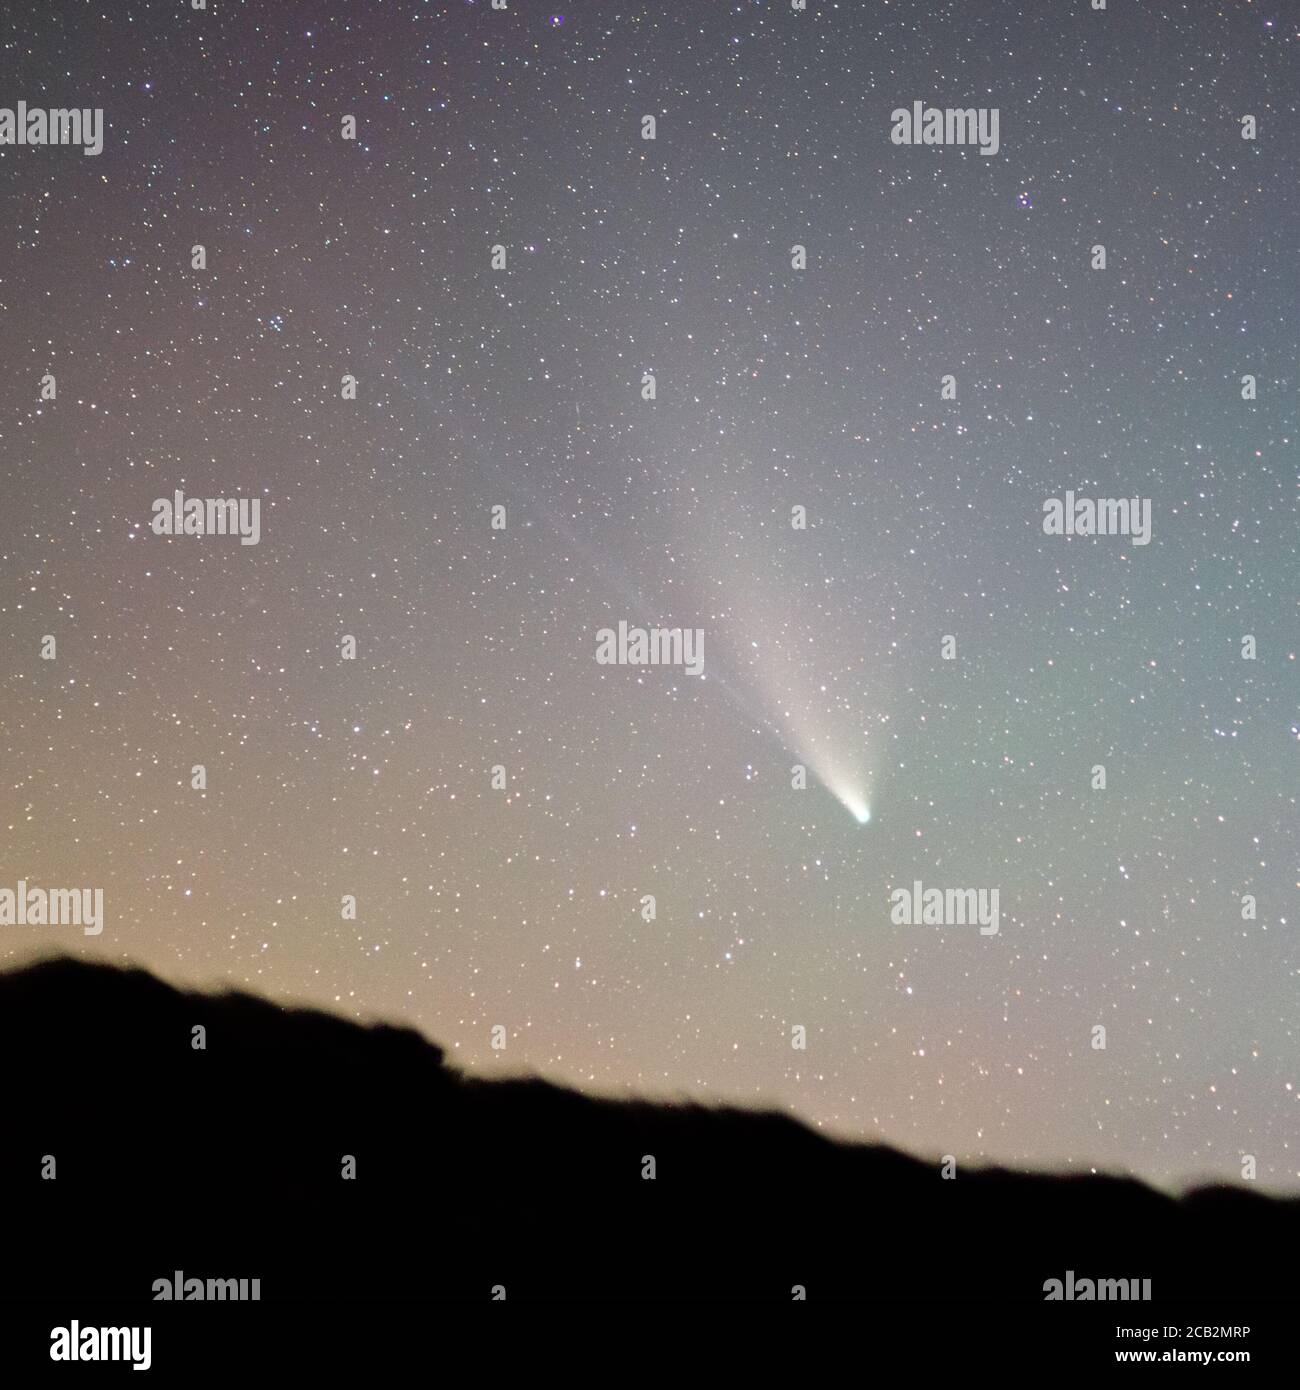 Comet C/2020 F3 'Neowise' prise de Uwchmynydd, pays de Galles, le 28 juillet 2020. Empilé à partir de plusieurs images fixes. ROYAUME-UNI. Astrophotographie. Ciel étoilé foncé Banque D'Images